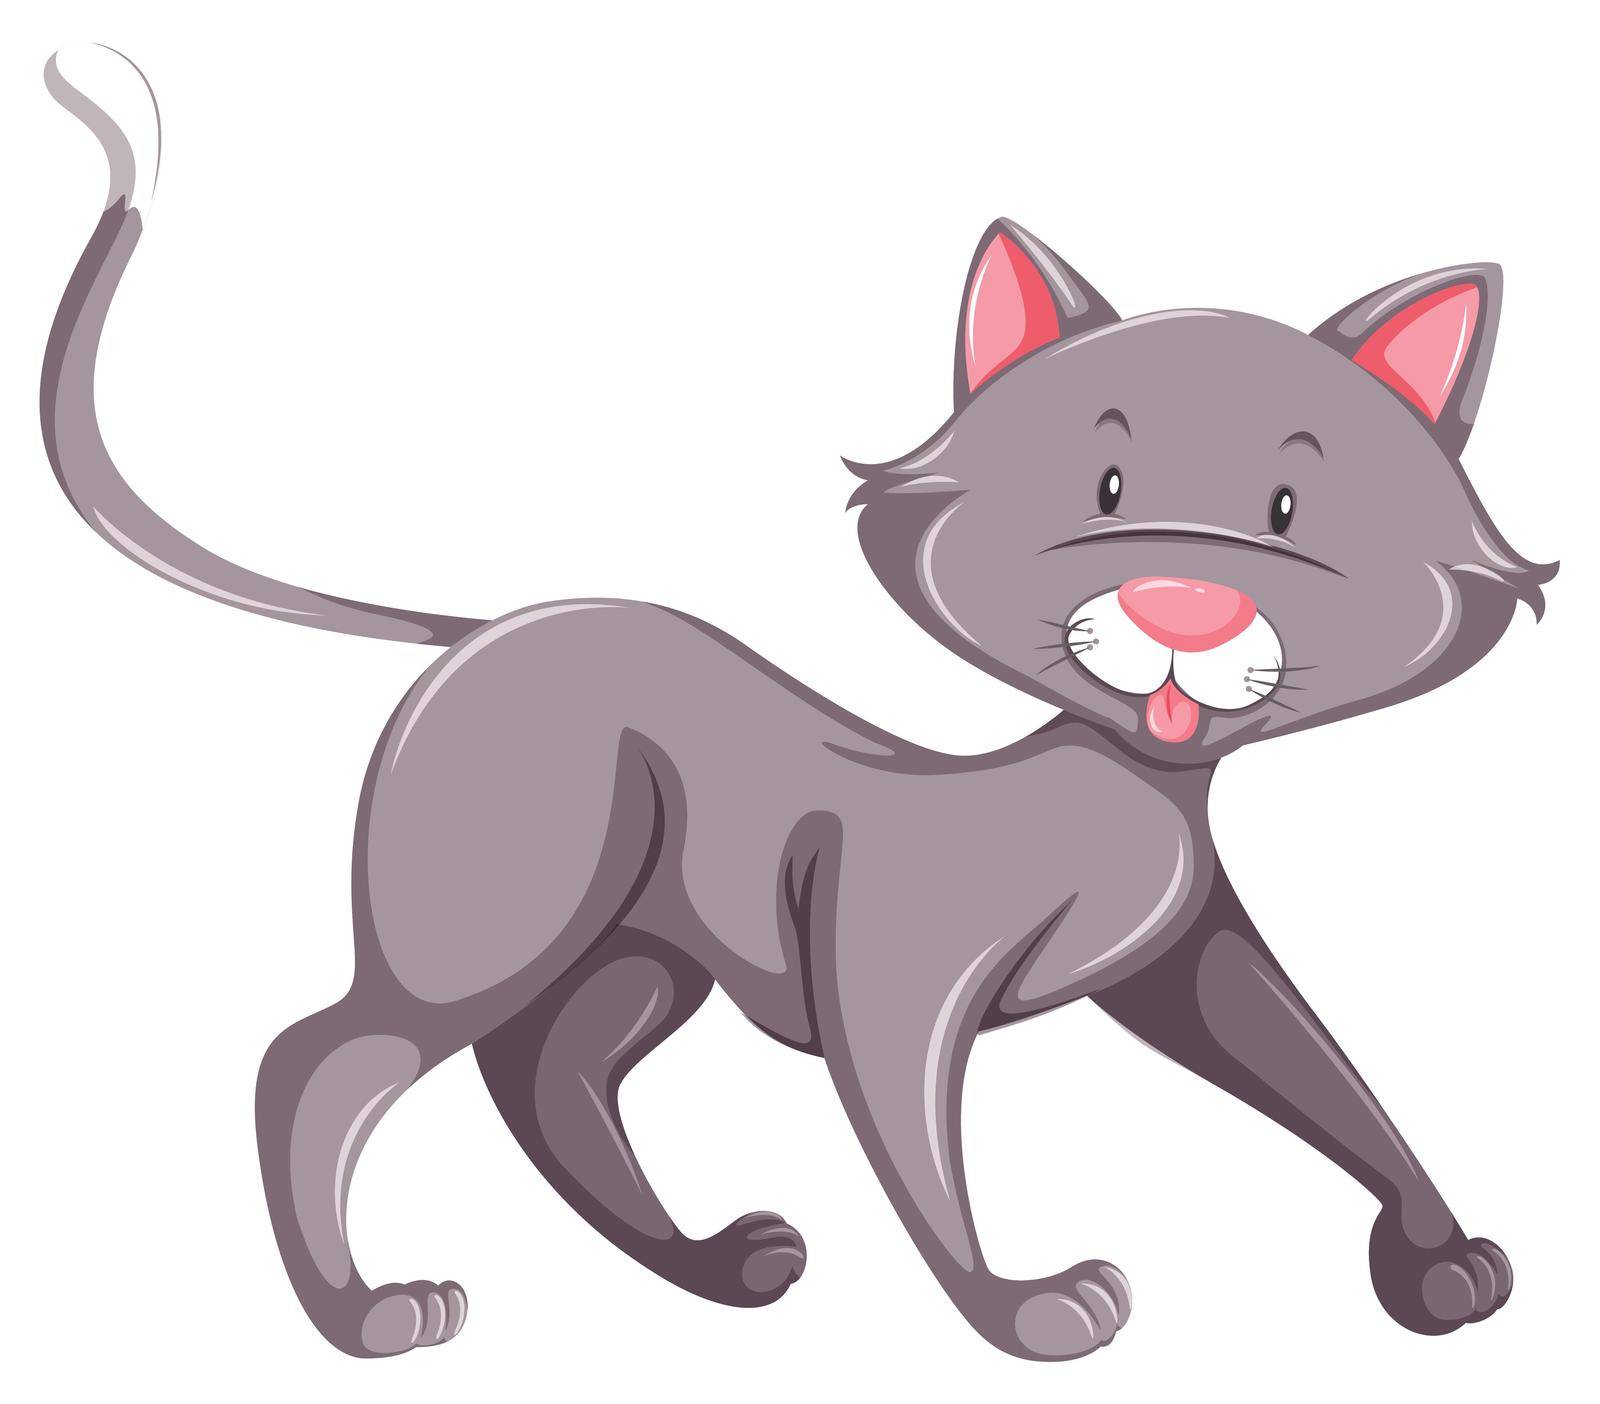 Grey cat by iimages